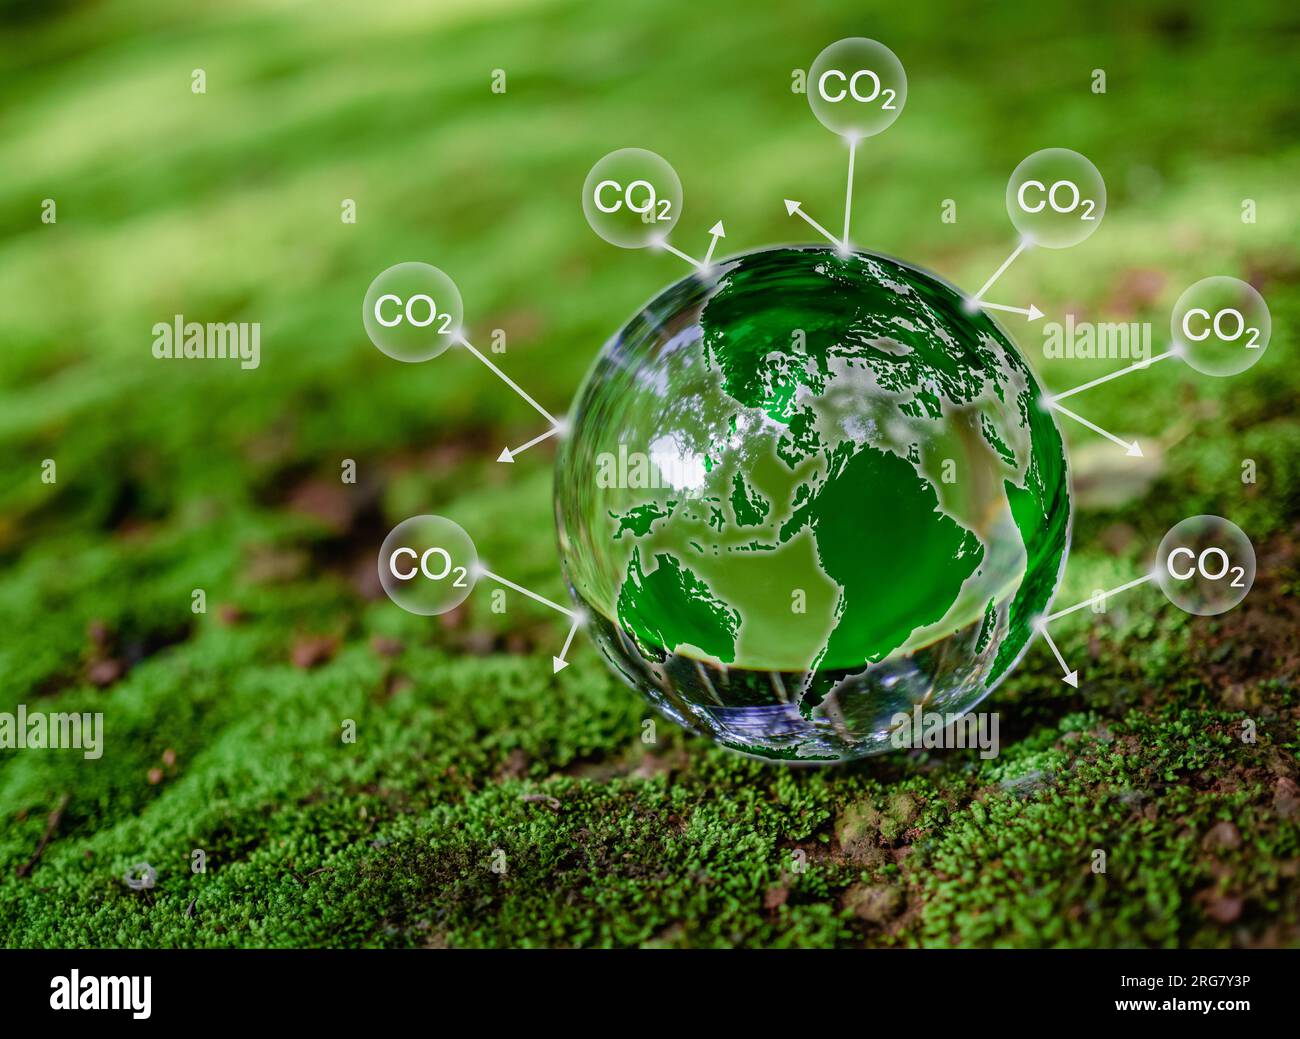 Boule de cristal sur mousse dans la forêt verte. Concept de réduction des émissions de CO2, environnement propre et convivial sans émissions de dioxyde de carbone. Plantation d'arbres Banque D'Images